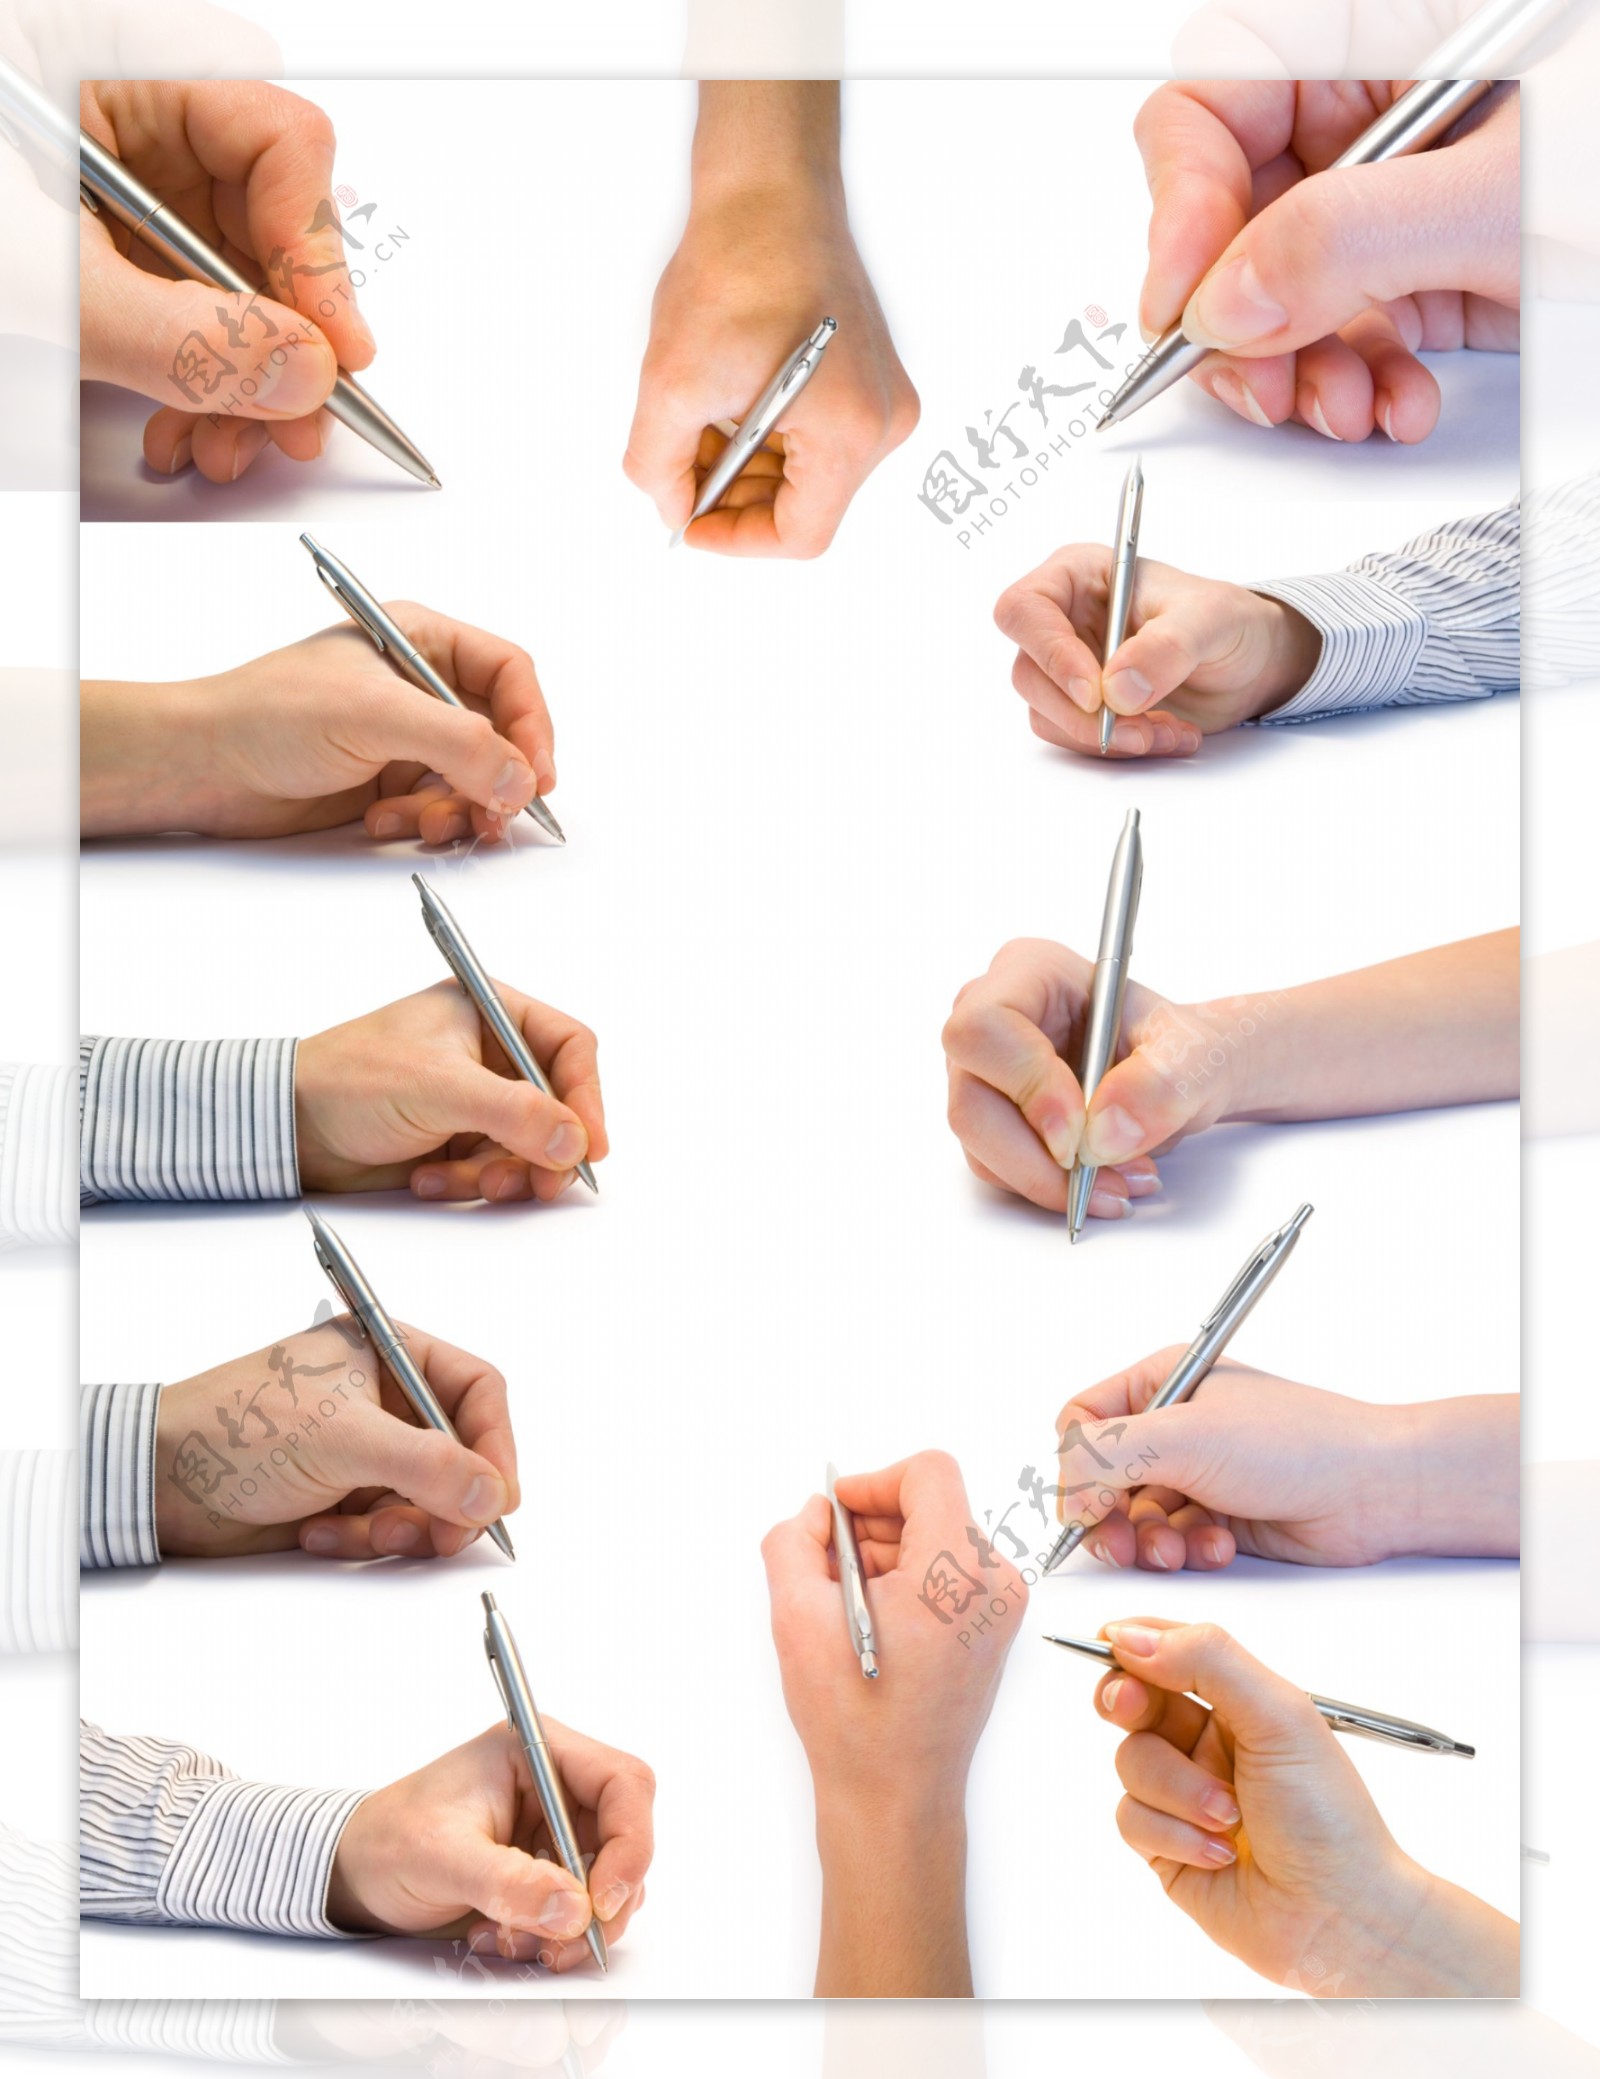 一组握笔手势素材高清图片